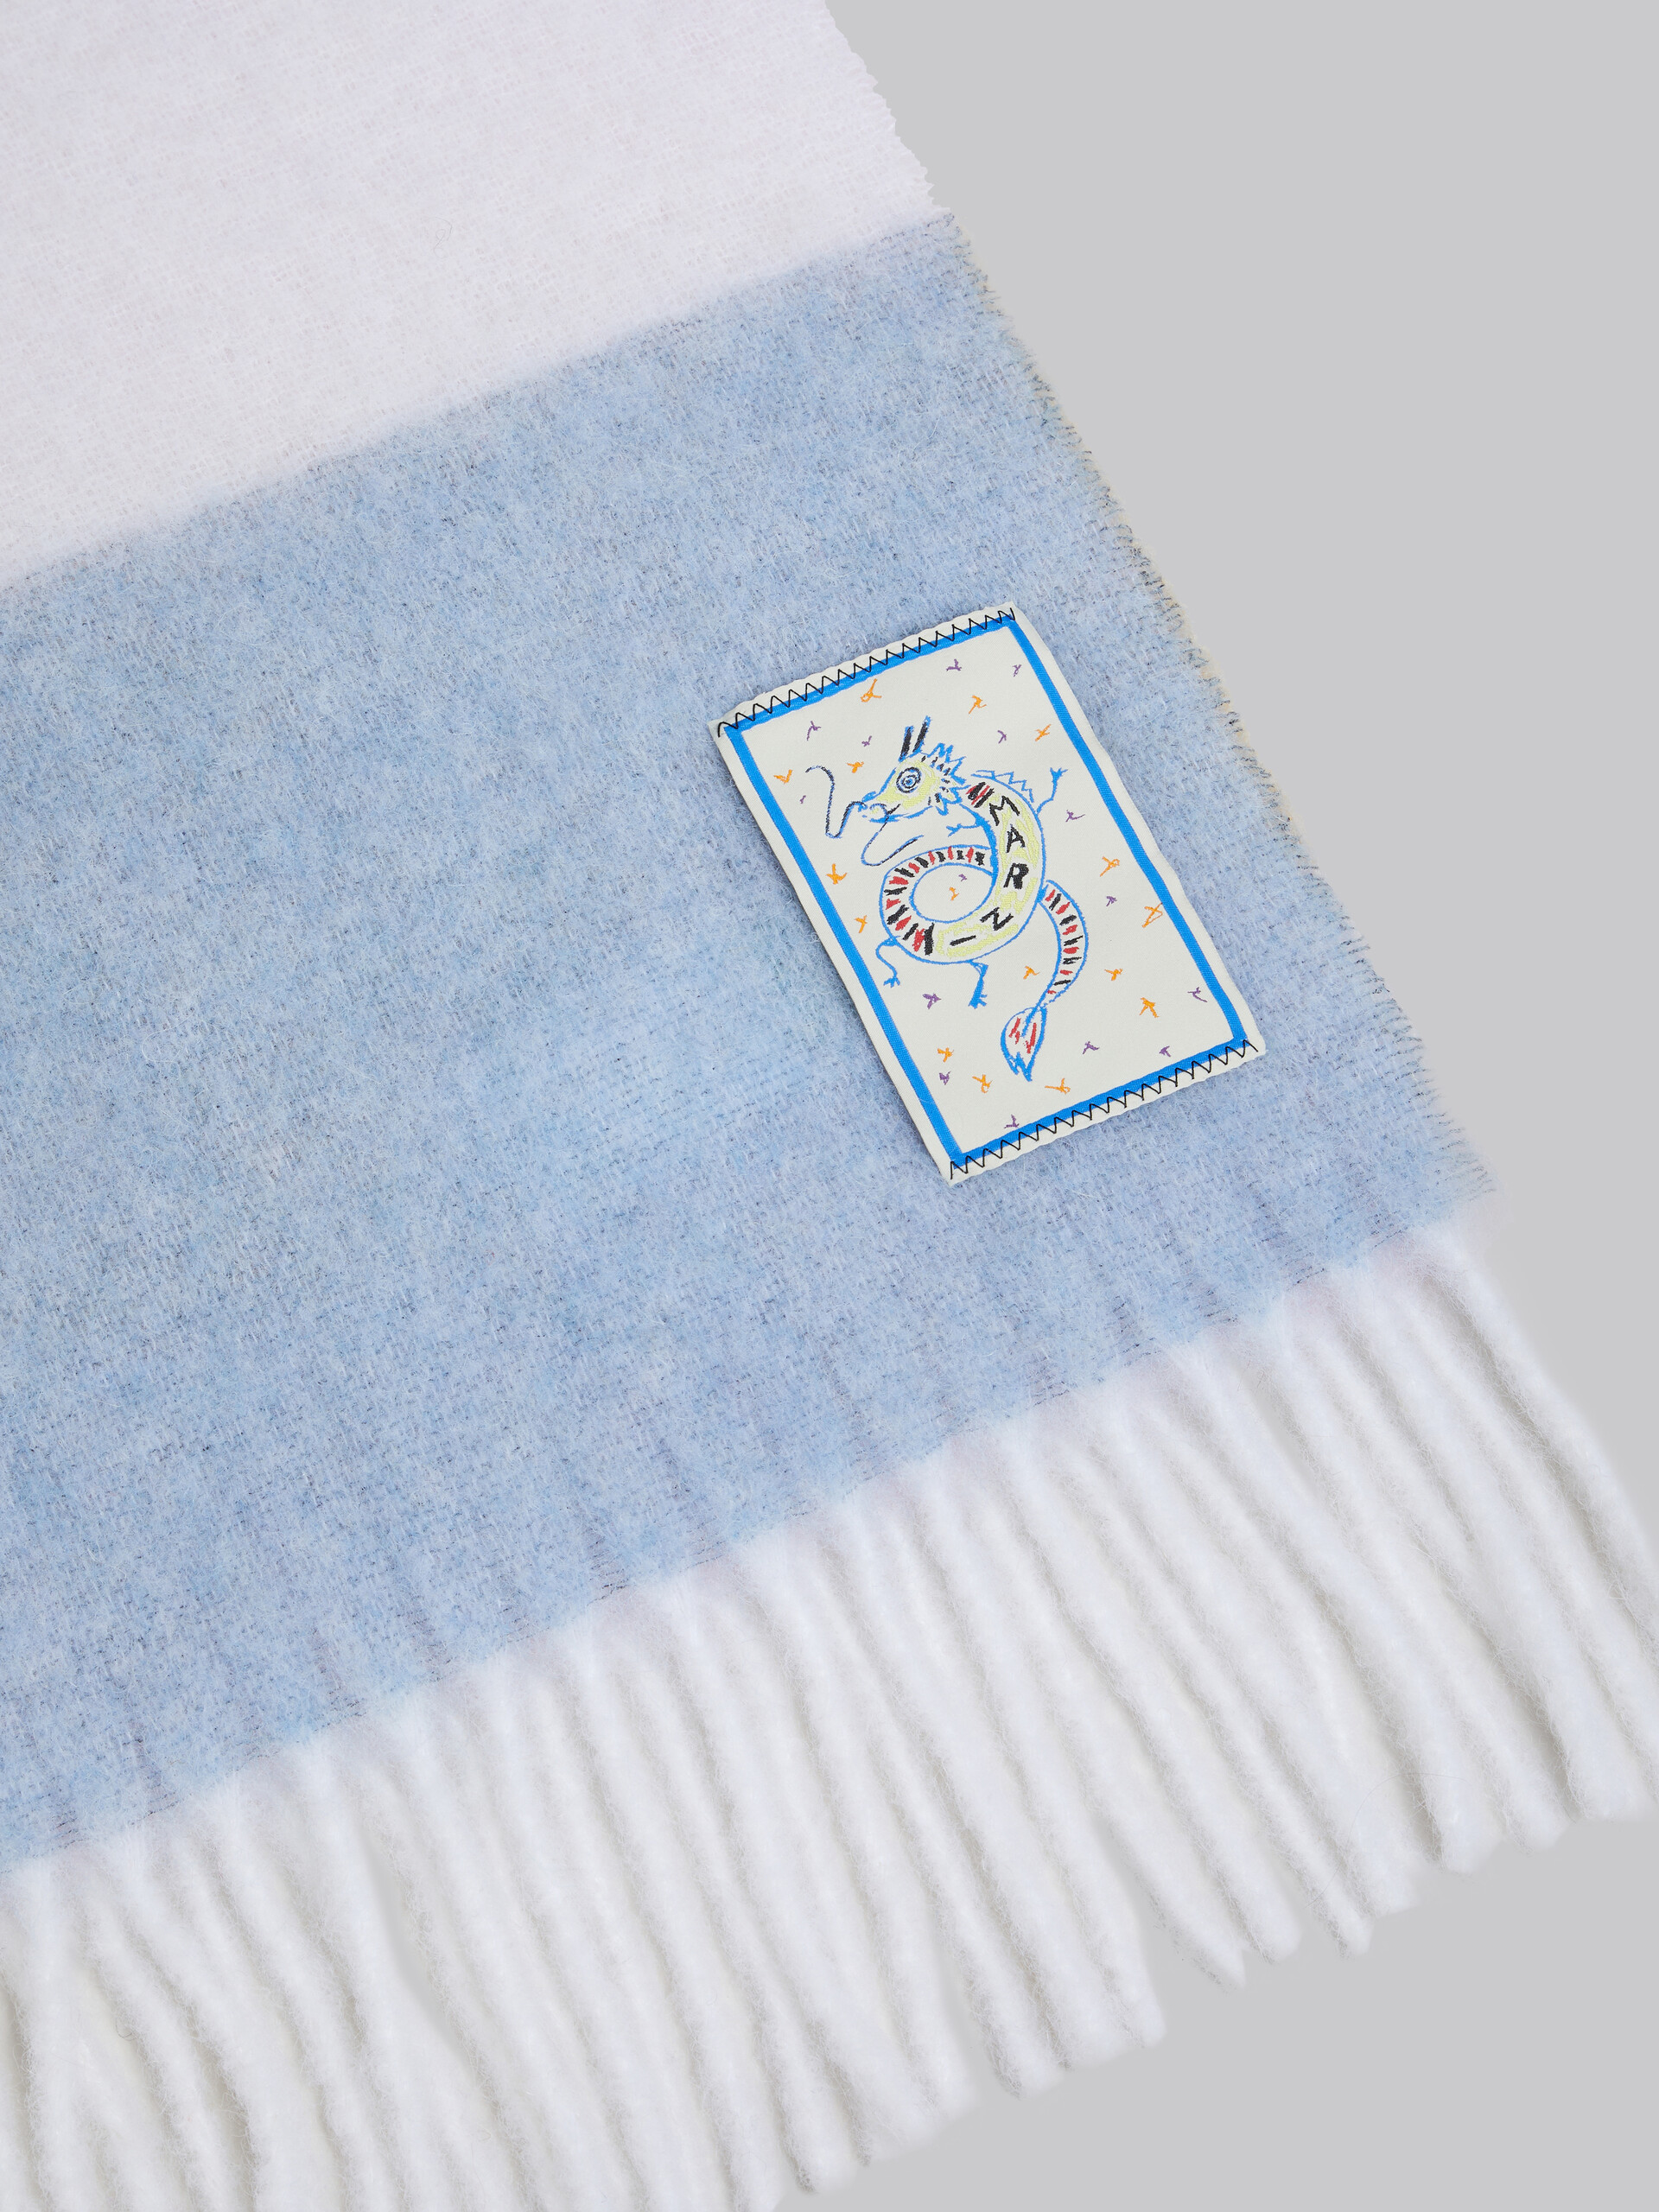 Alpakaschal mit Drachen-Aufnäher in Weiß, Blau und Rosa - Schals - Image 4